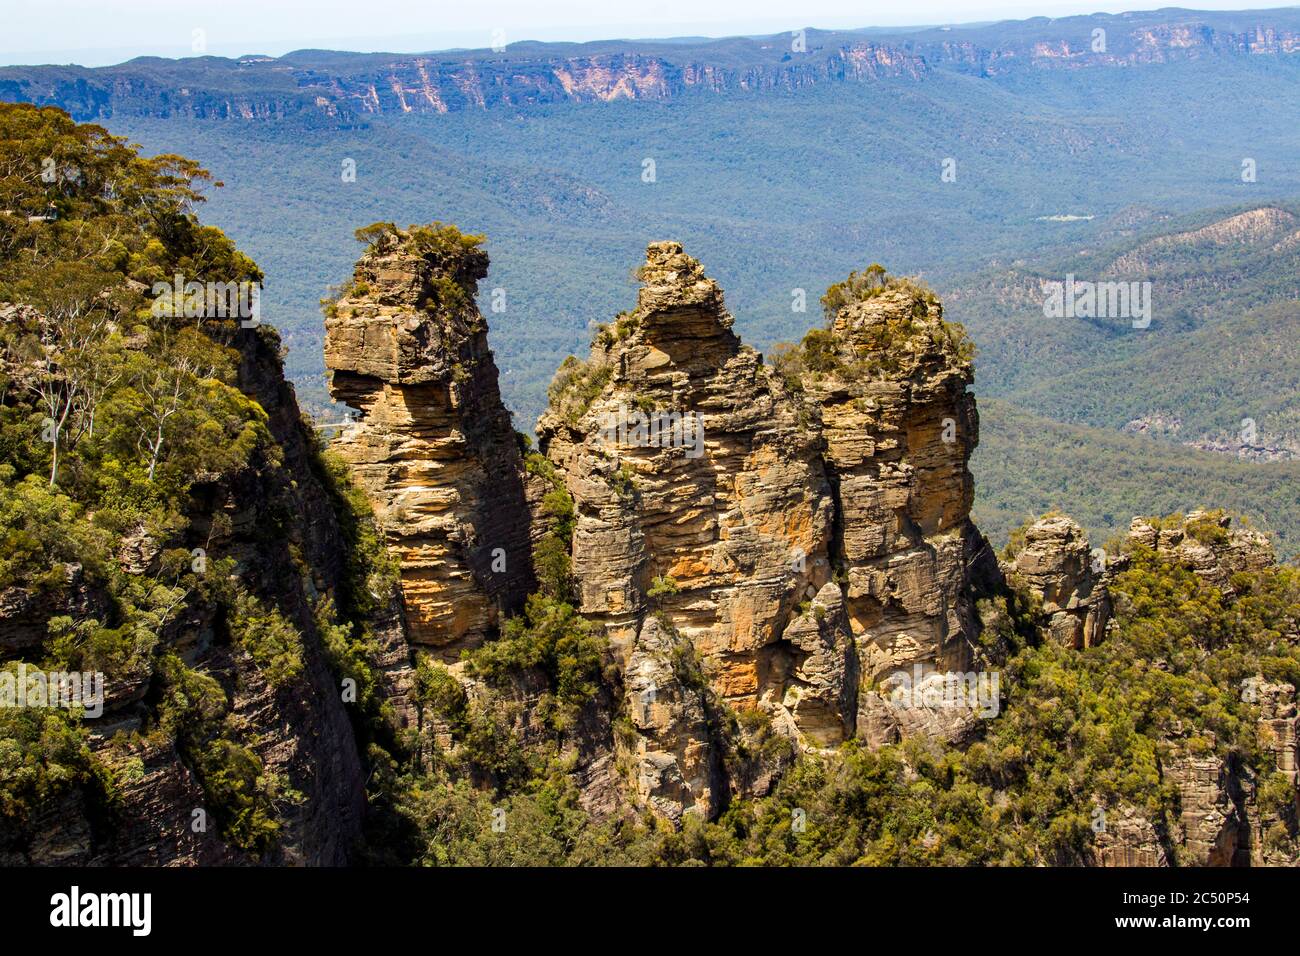 Le tre sorelle sono una insolita formazione di roccia nelle Blue Mountains del Nuovo Galles del Sud, Australia, sulla scarpata del nord di Jamison Valley. Foto Stock